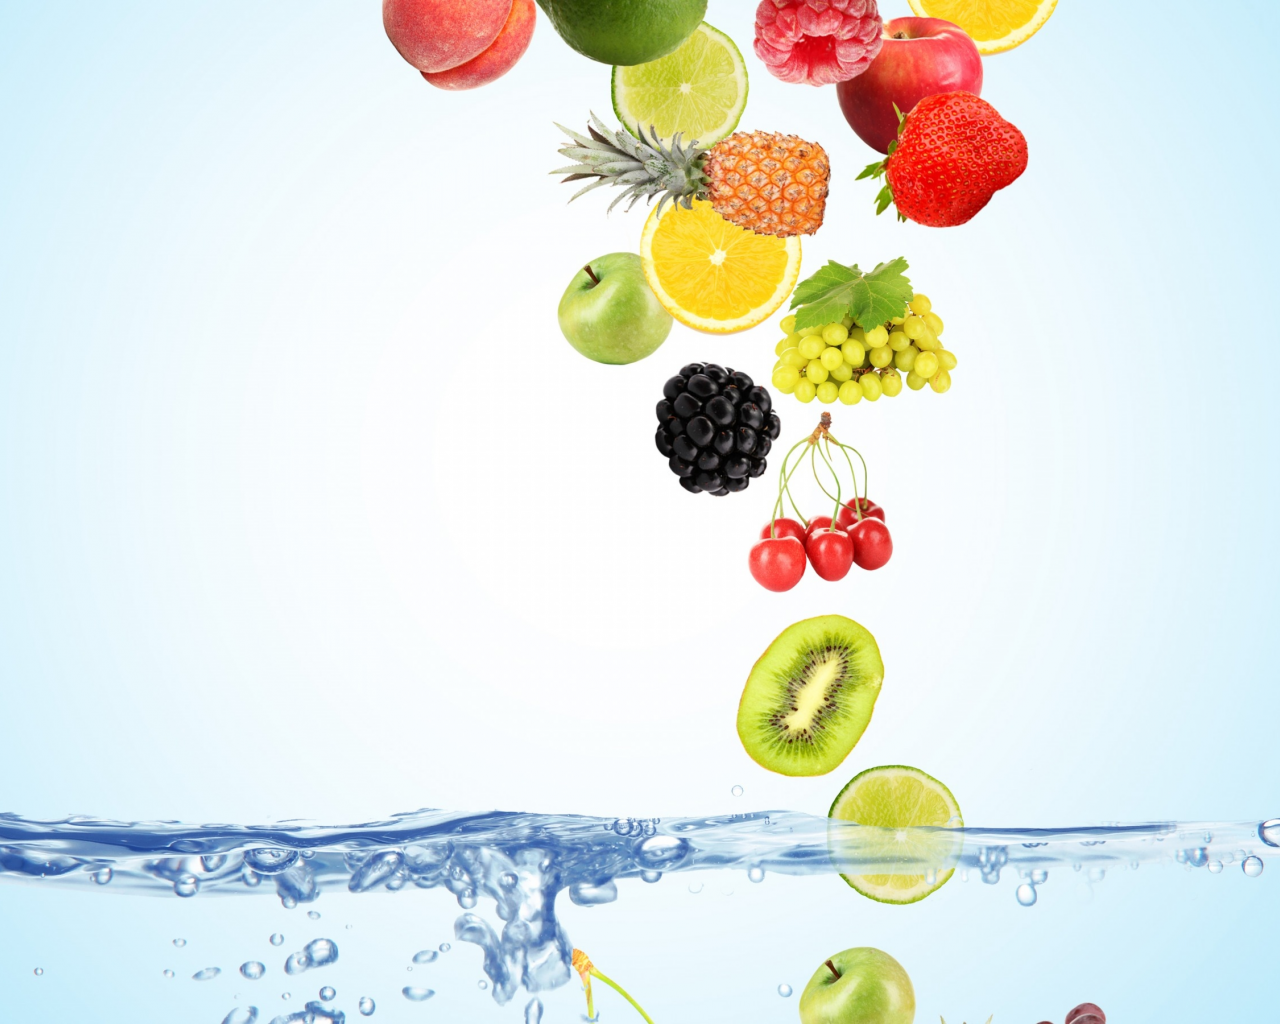 вода, пузырьки, вишня, ягоды, малина, фон, голубой, лимон, яблоки, кокос, киви, клубника, виноград, сверху, лайм, фрукты, персики, падают